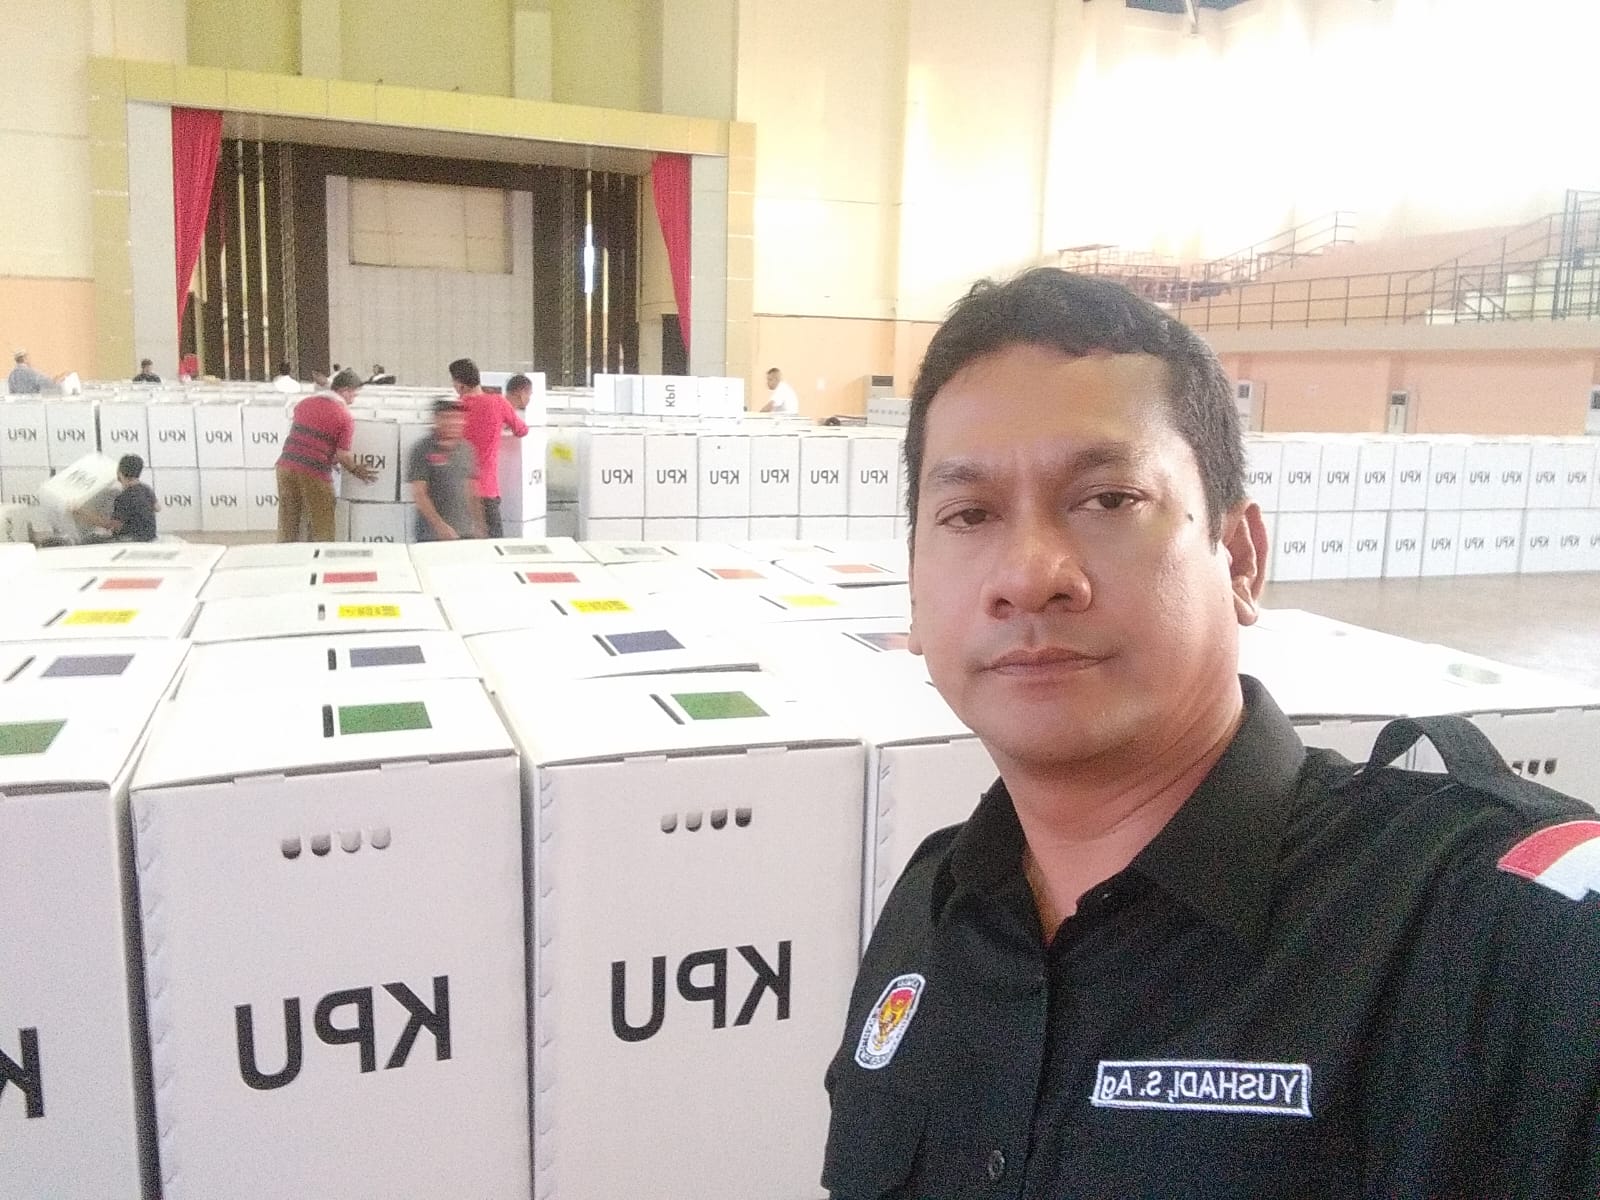 Tahapan Coklit Capai 74 Persen, Ini Penjelasan Komisioner KIP Banda Aceh